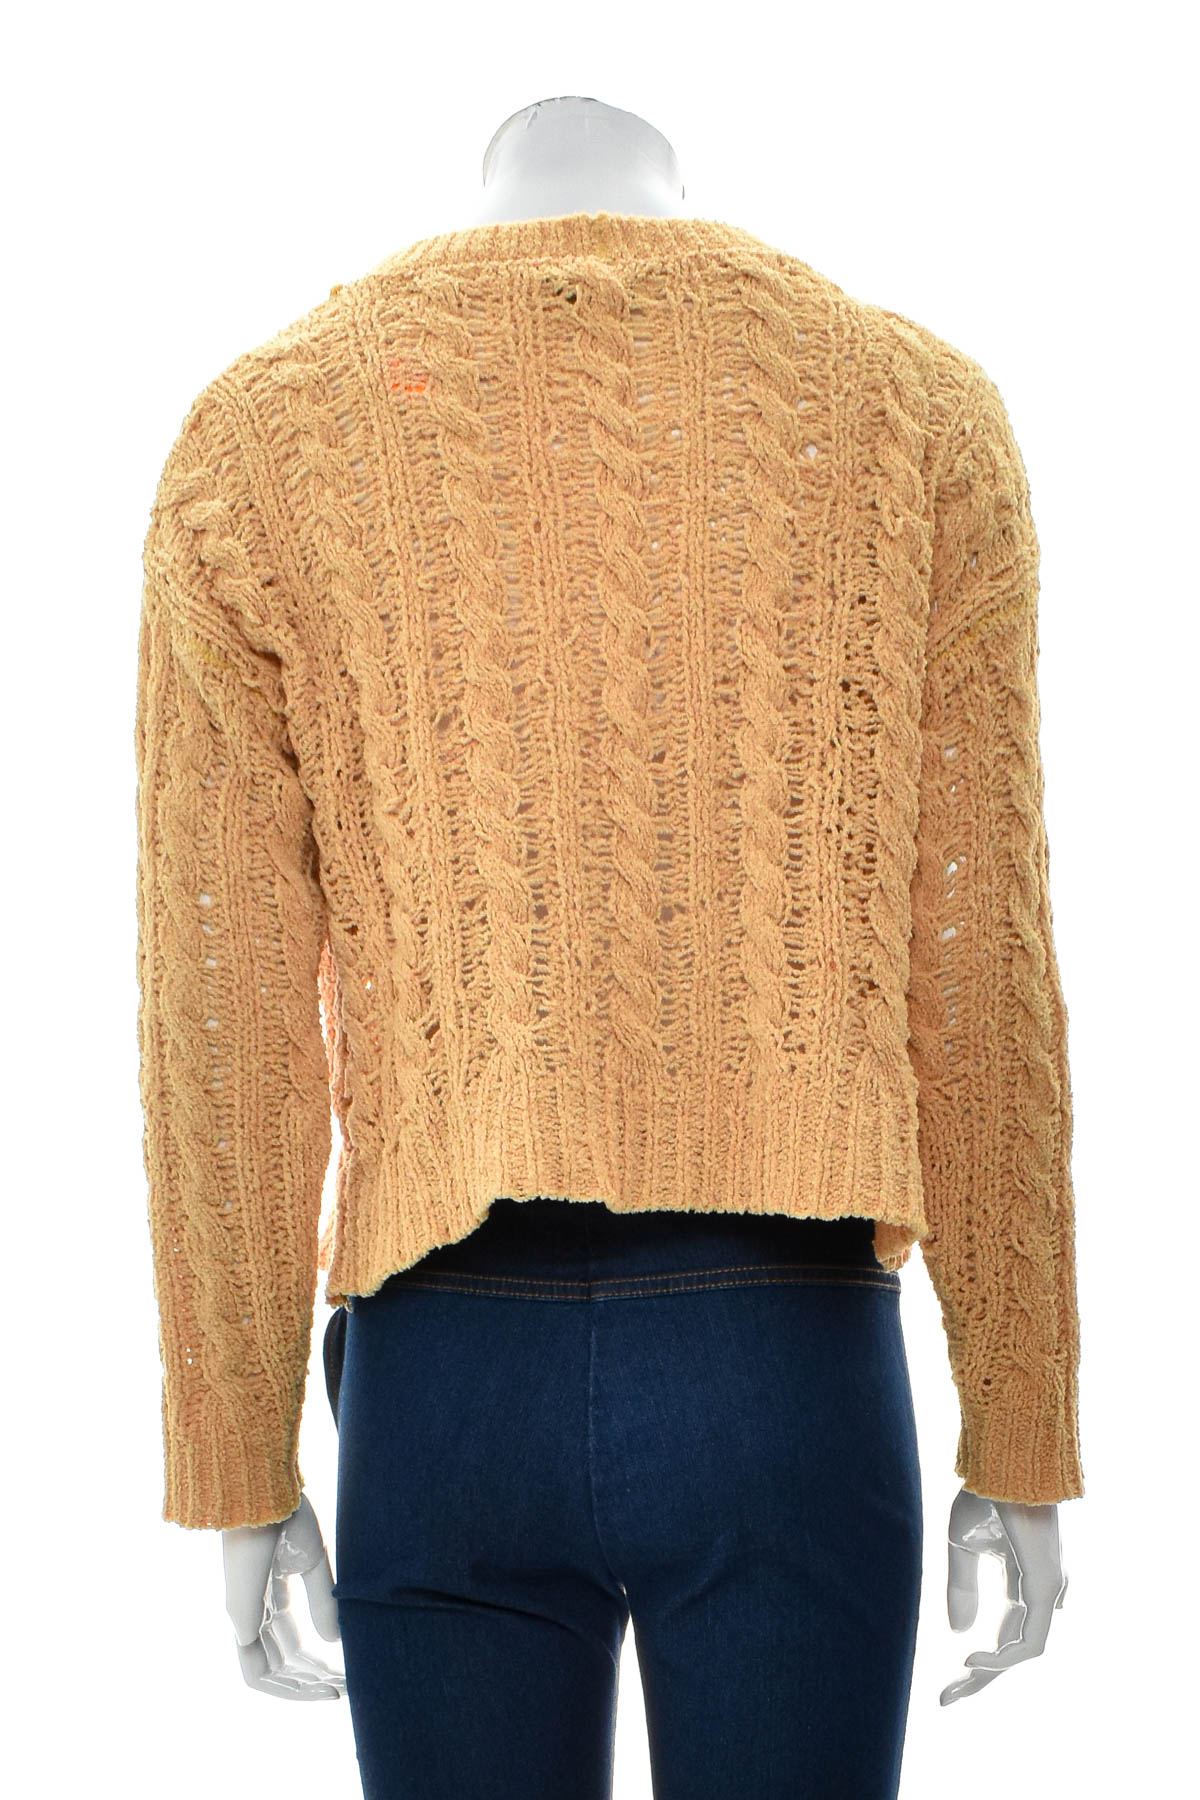 Women's sweater - American Eagle - 1